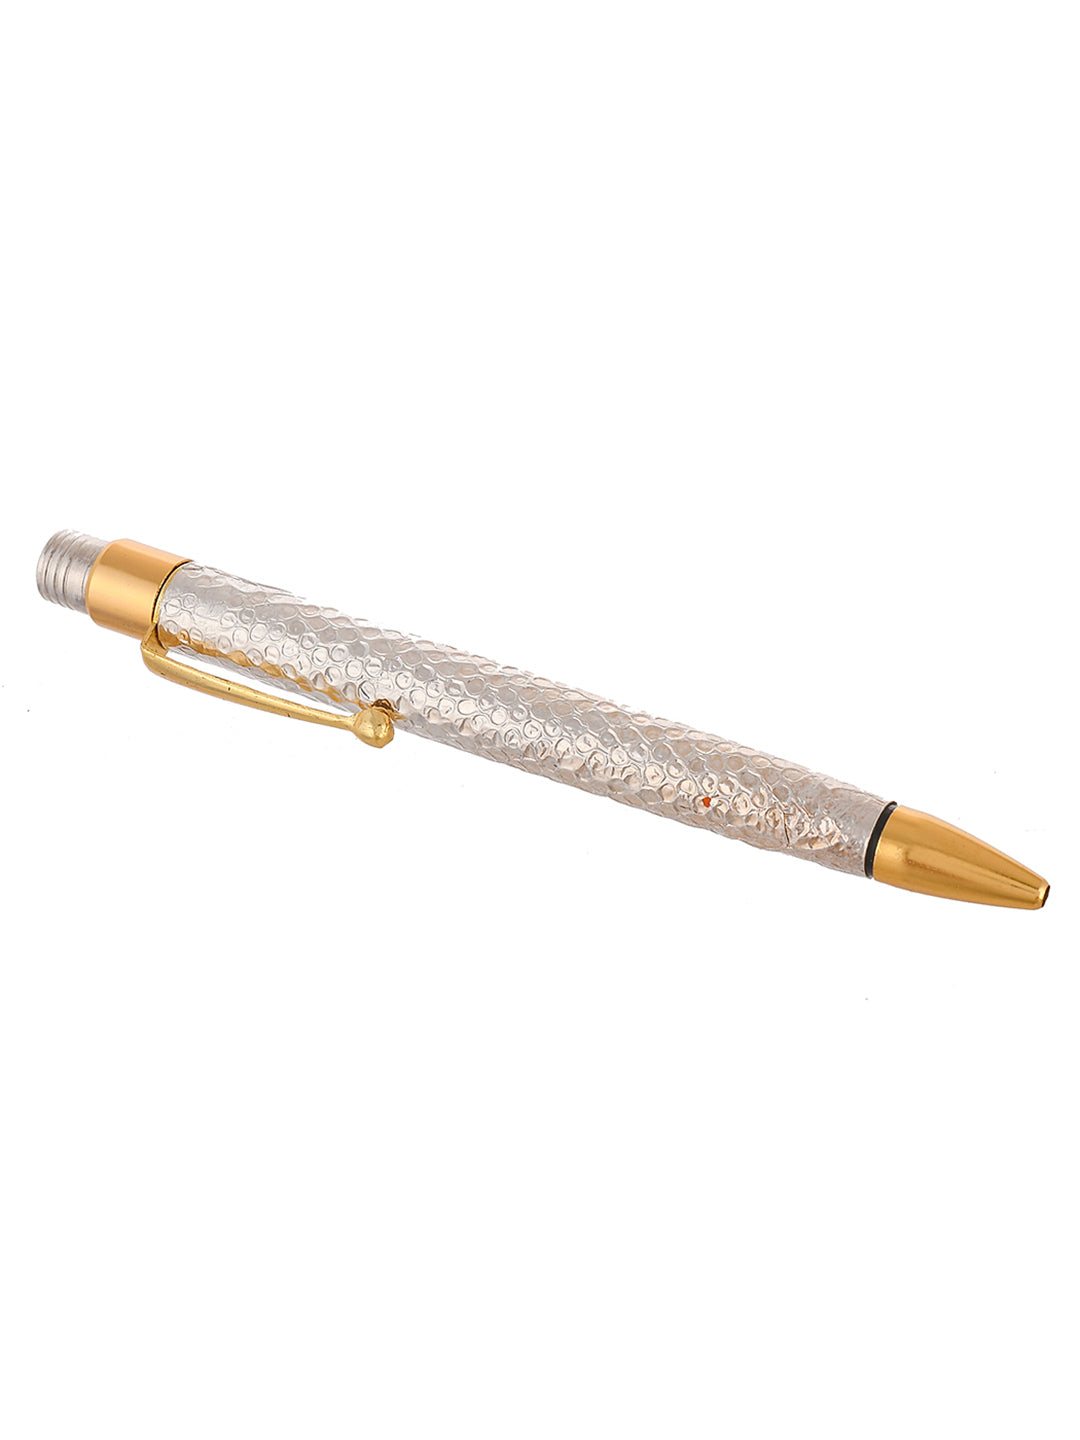 Buy Scriveiner Silver Chrome Fountain Pen (Fine), Award Winning Luxury Pen,  Heavy Pocket Pen with 24K Gold Finish, Schmidt Nib, Converter, Best EDC  Writing Pen Gift Set for Men & Women, Nice